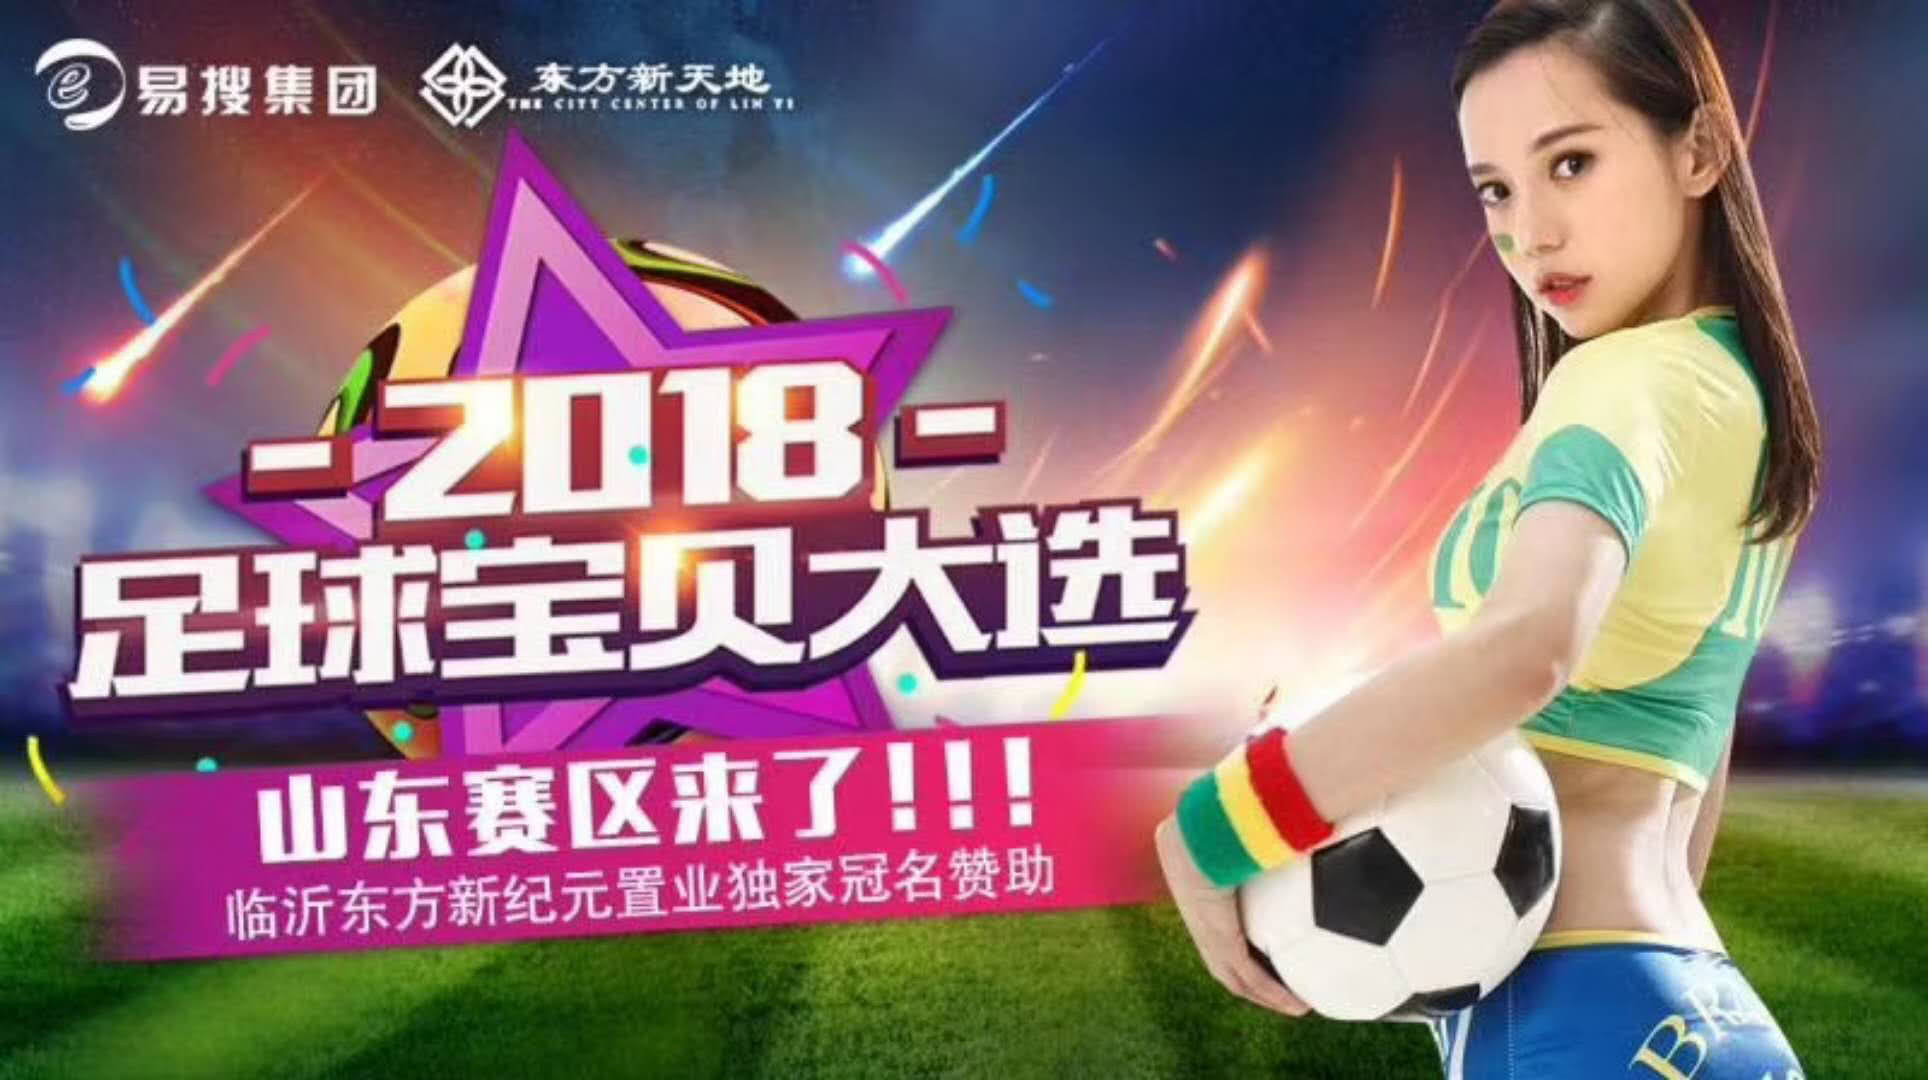 2018足球宝贝大赛山东临沂赛区完美落幕,长腿